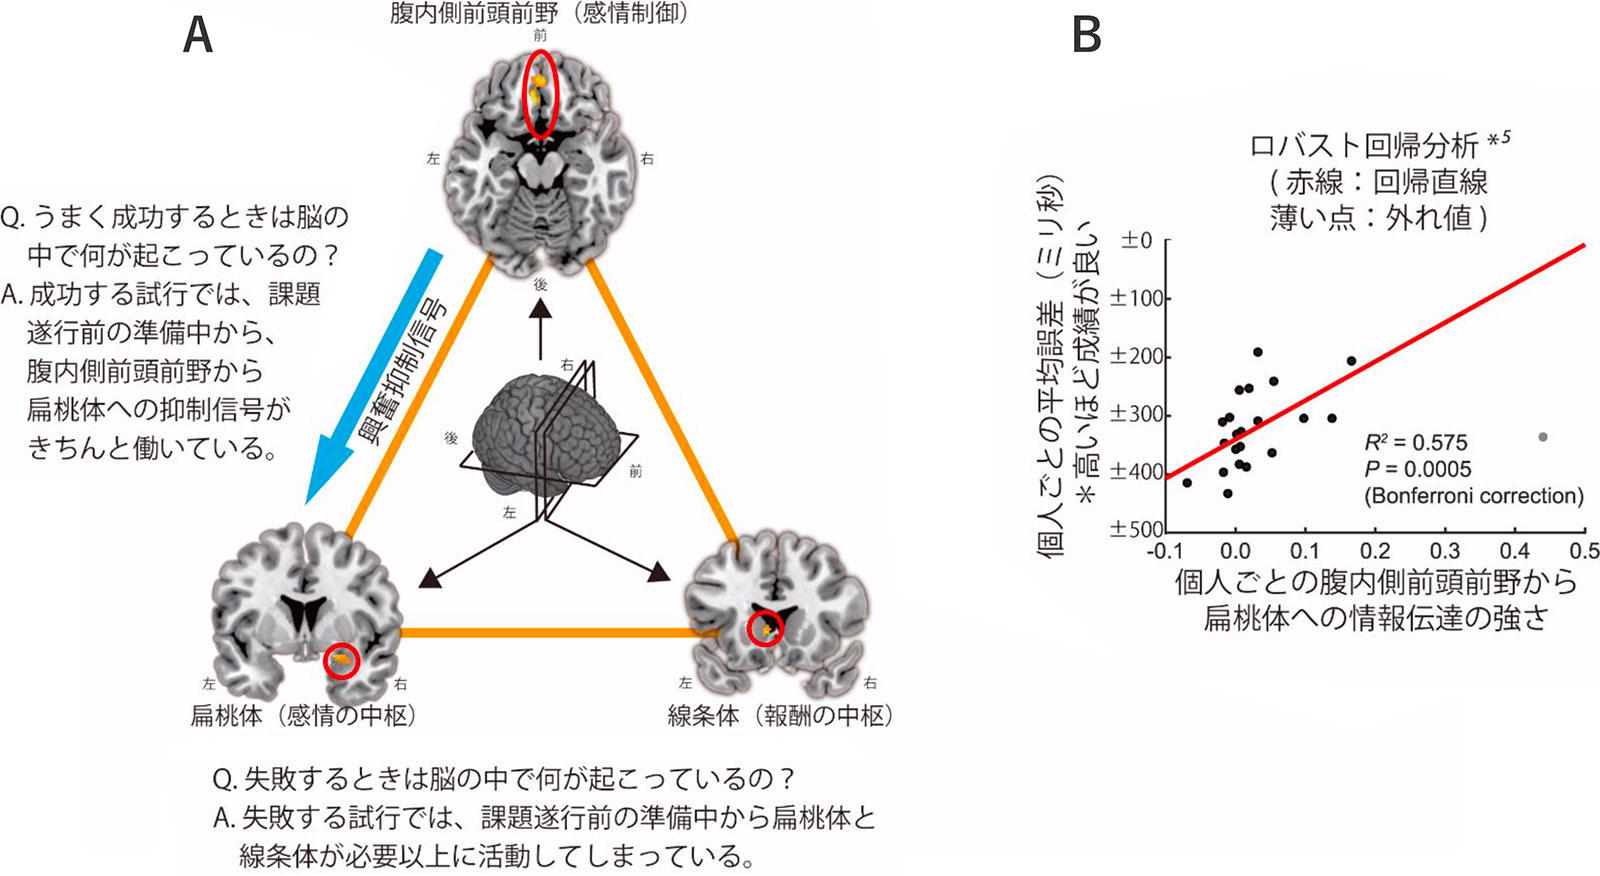 図2　興奮の上昇によって課題遂行寸前に変化する脳活動と、それをコントロールする脳ダイナミクス